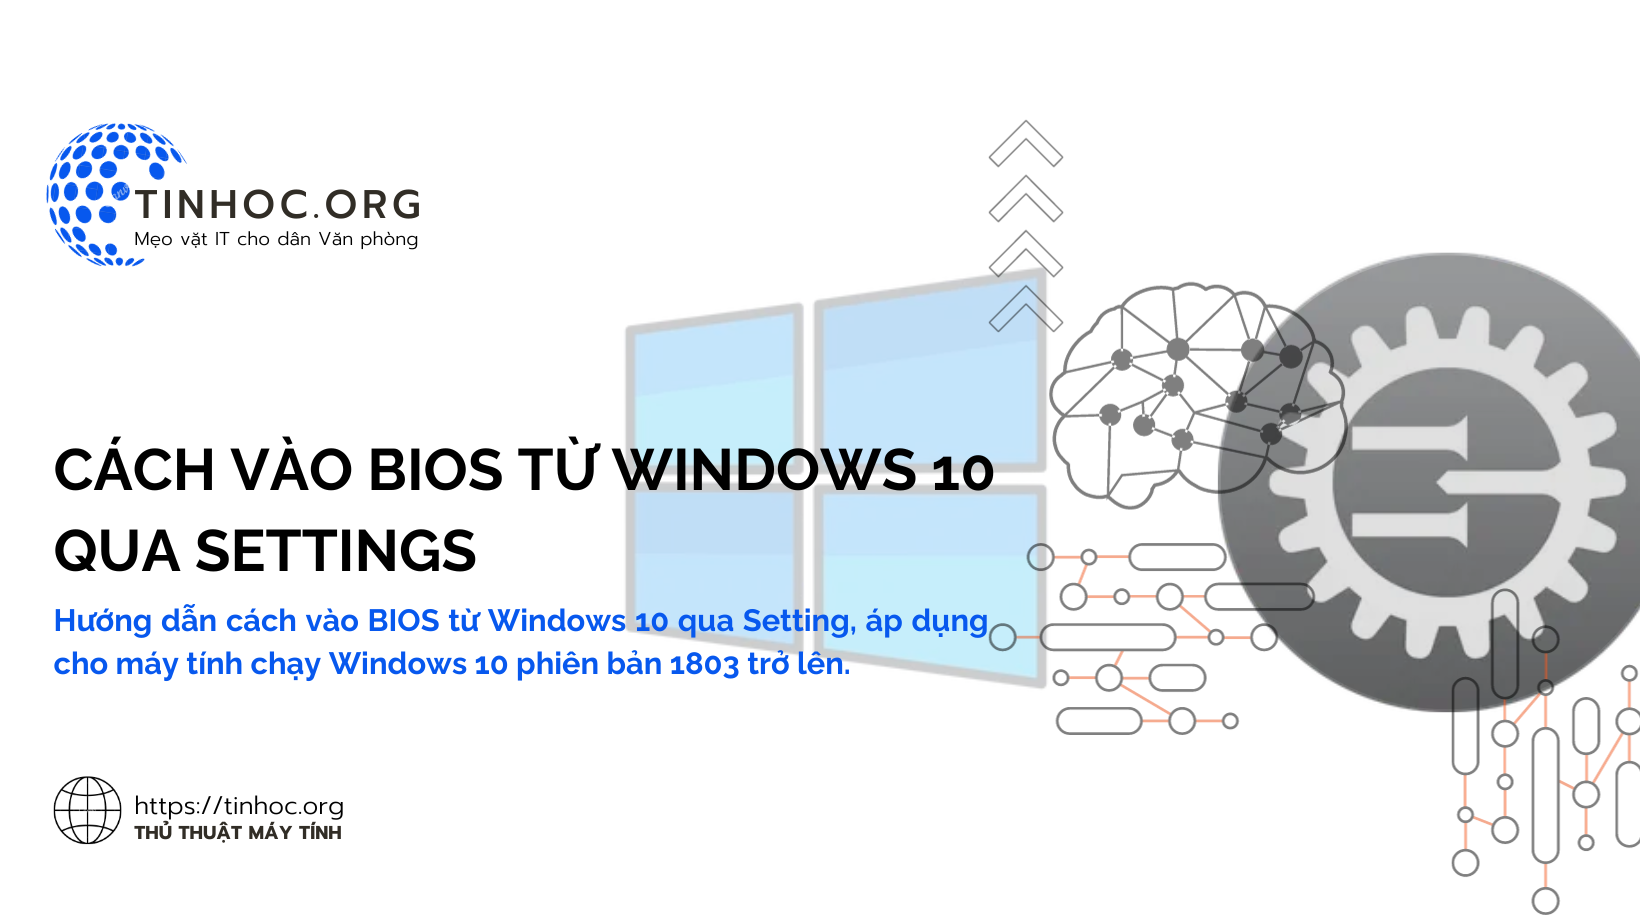 Hướng dẫn cách vào BIOS từ Windows 10 qua Setting, áp dụng cho máy tính chạy Windows 10 phiên bản 1803 trở lên.